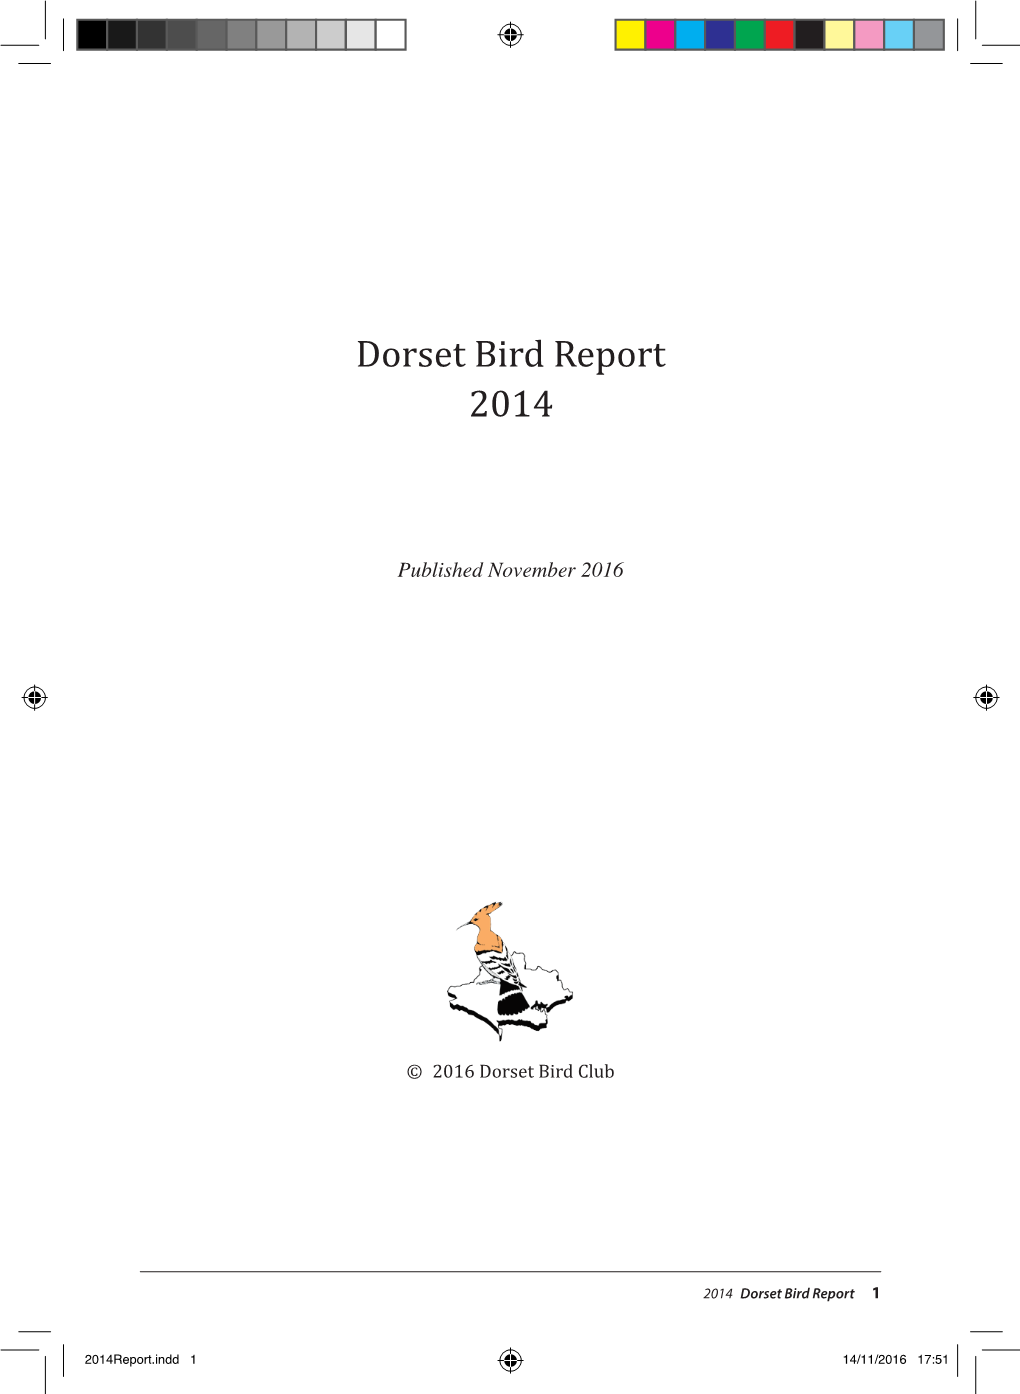 Dorset Bird Report 2014